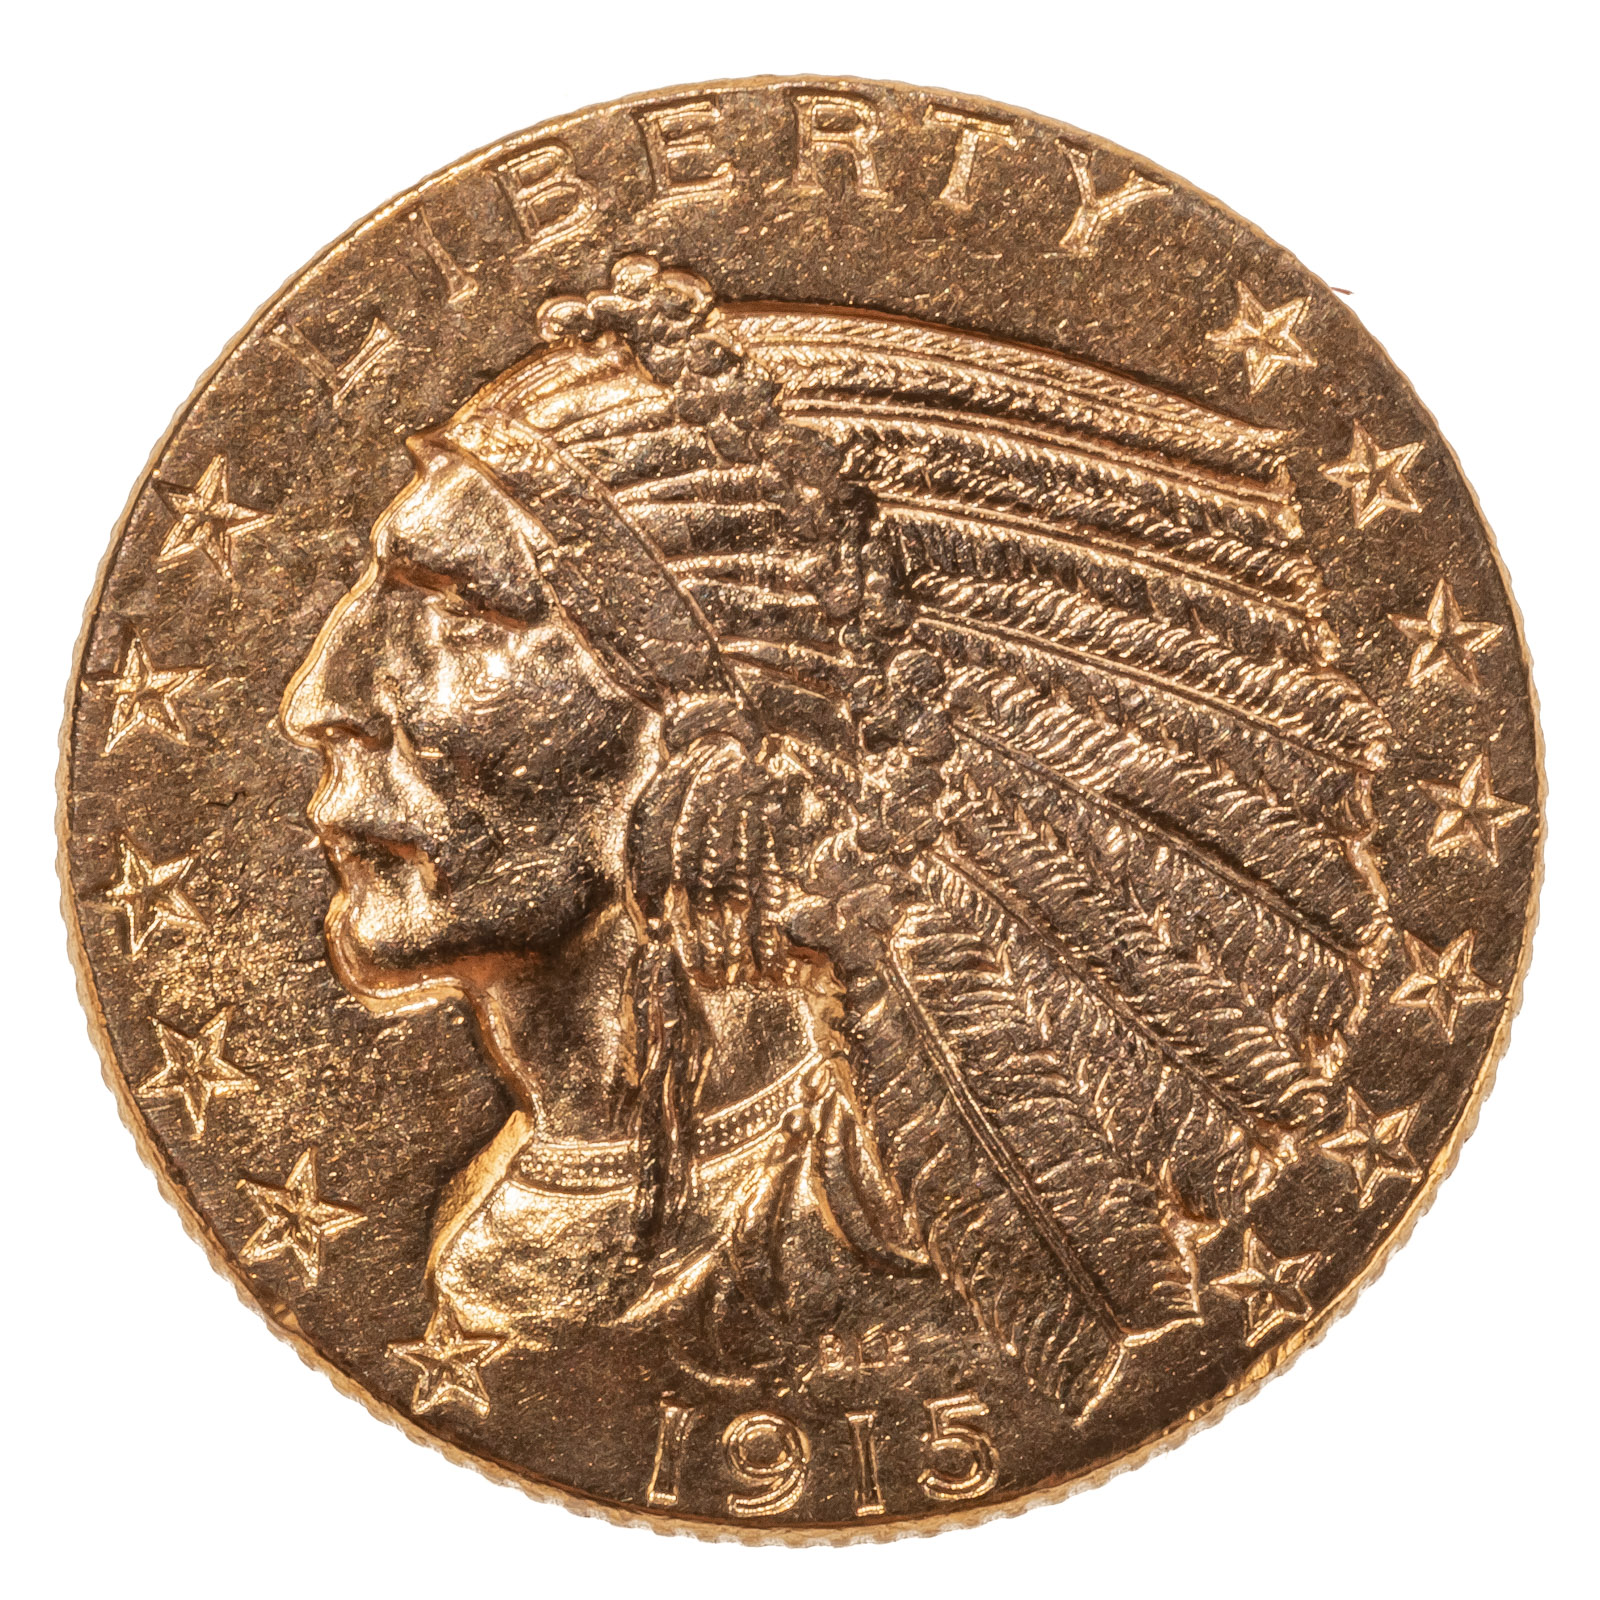 1915 $5 INDIAN GOLD HALF EAGLE